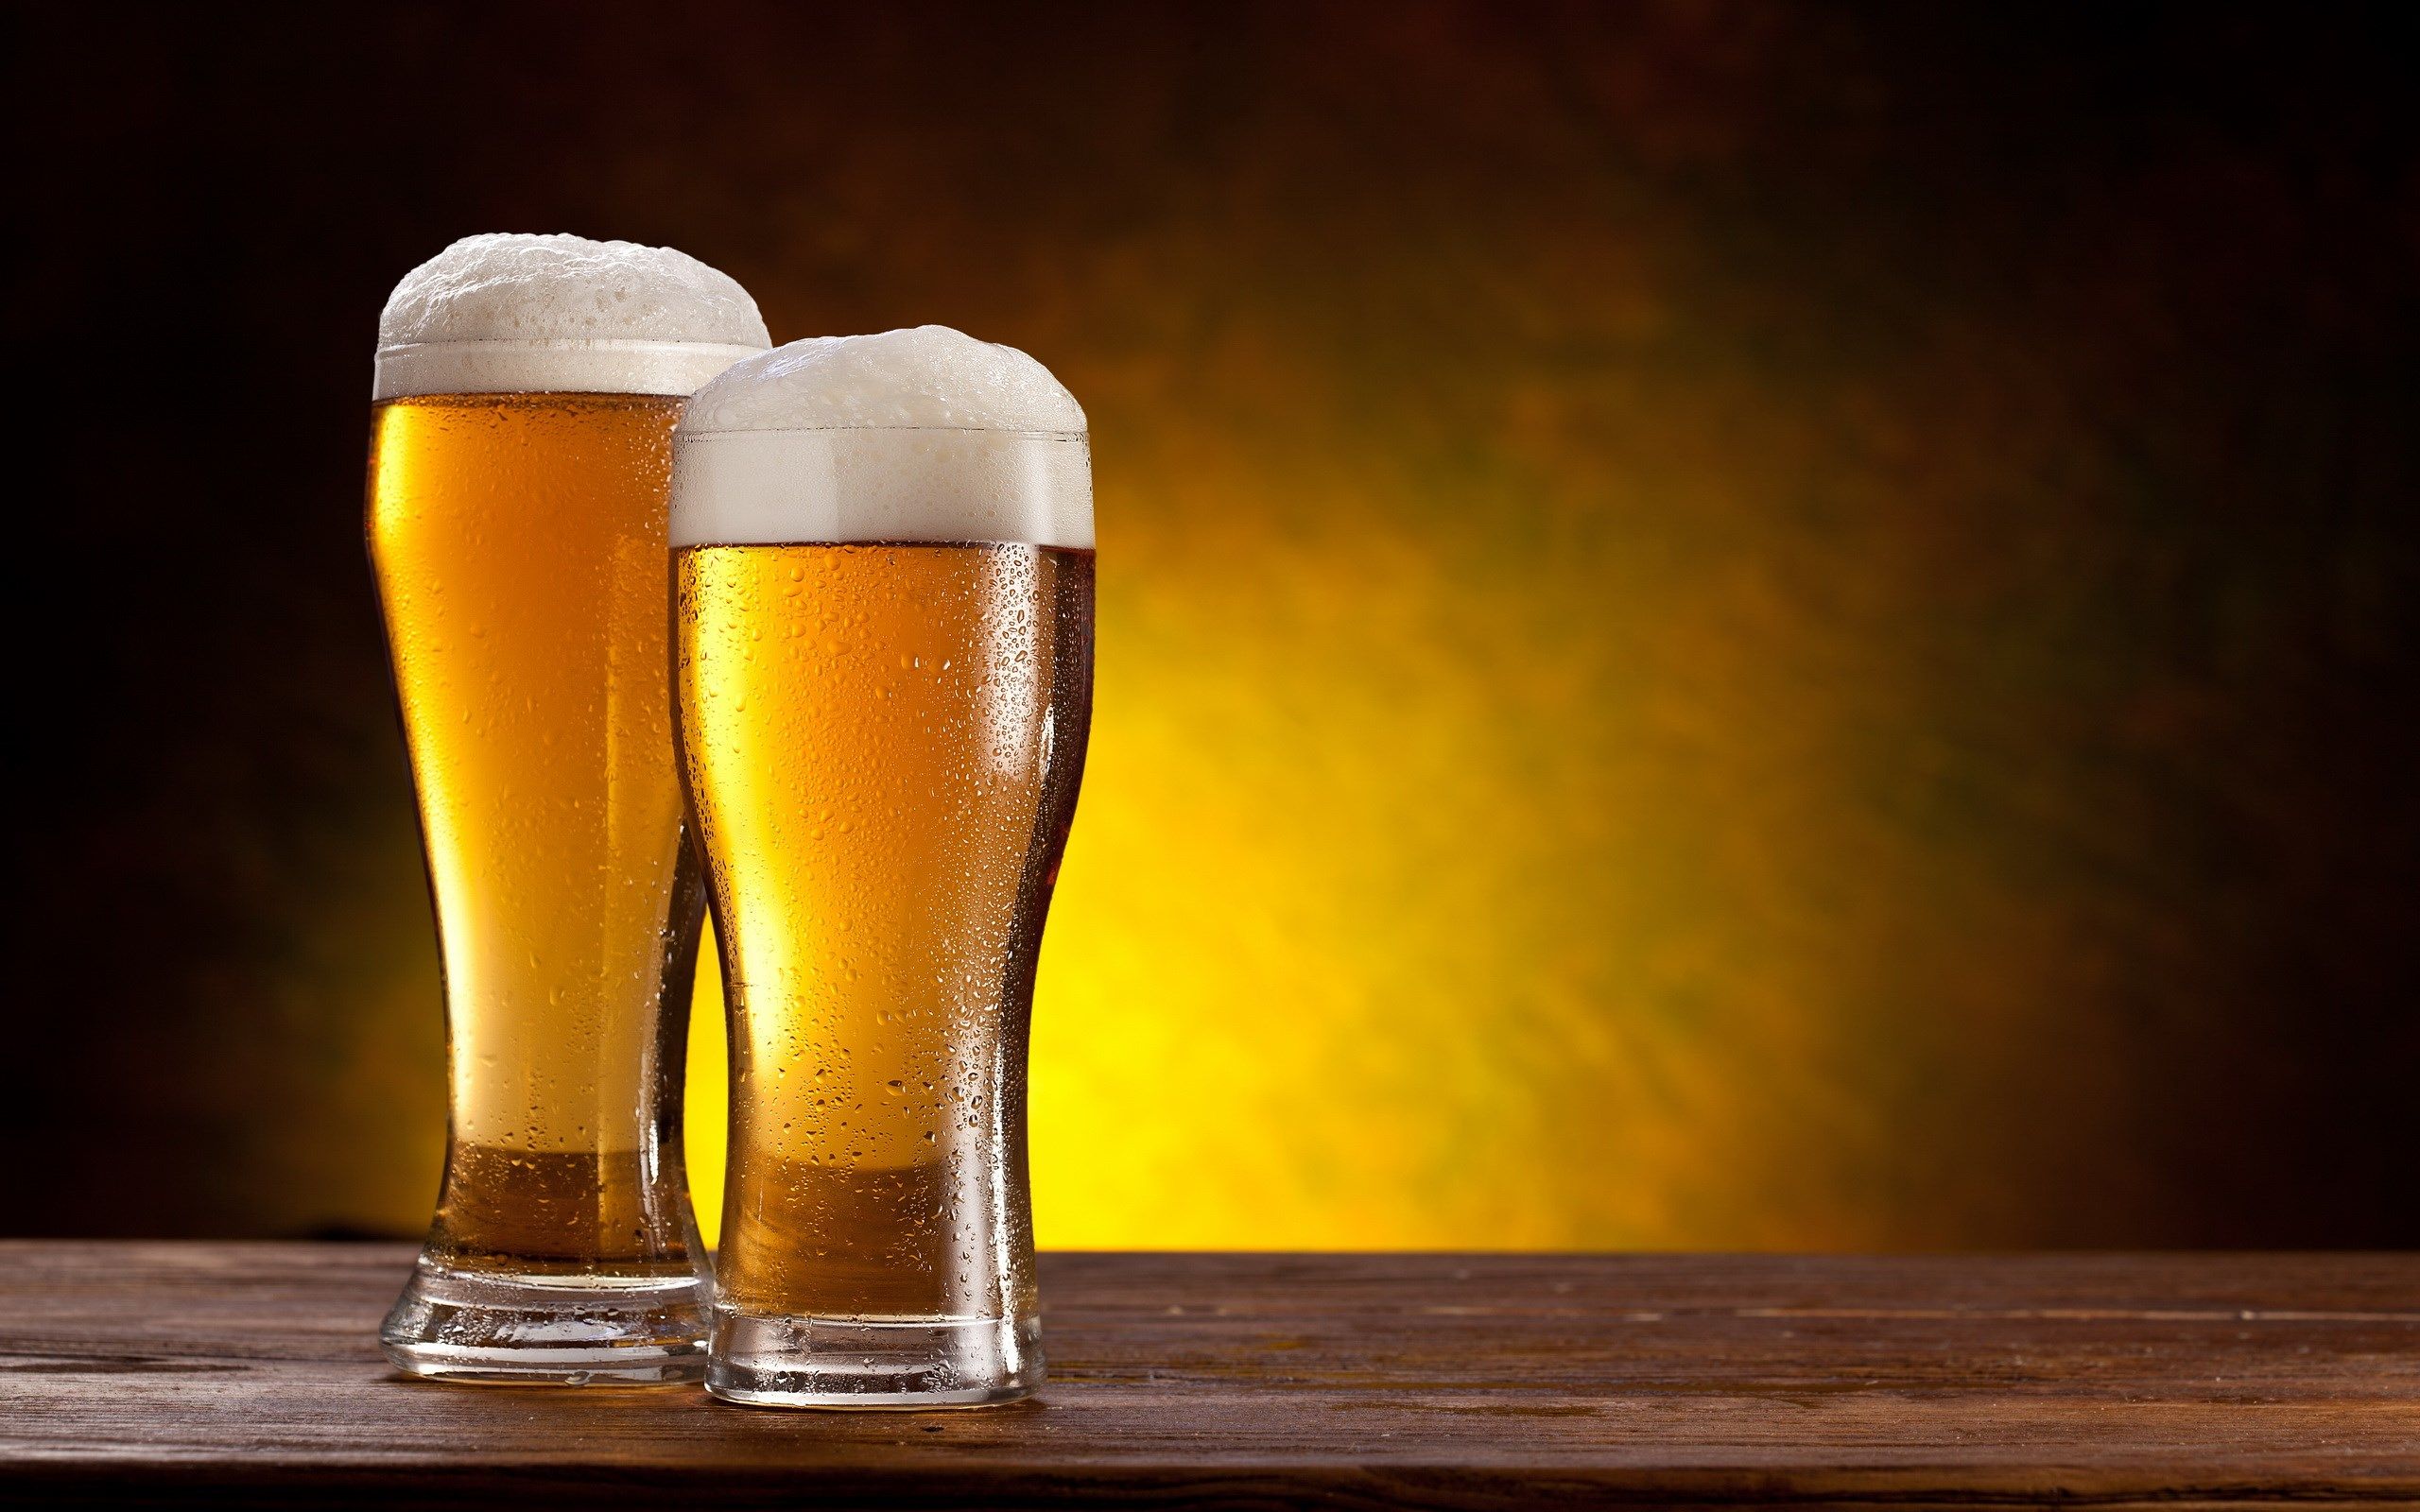 beer HD wallpaper. Beer, Beer wallpaper, Beer glasses